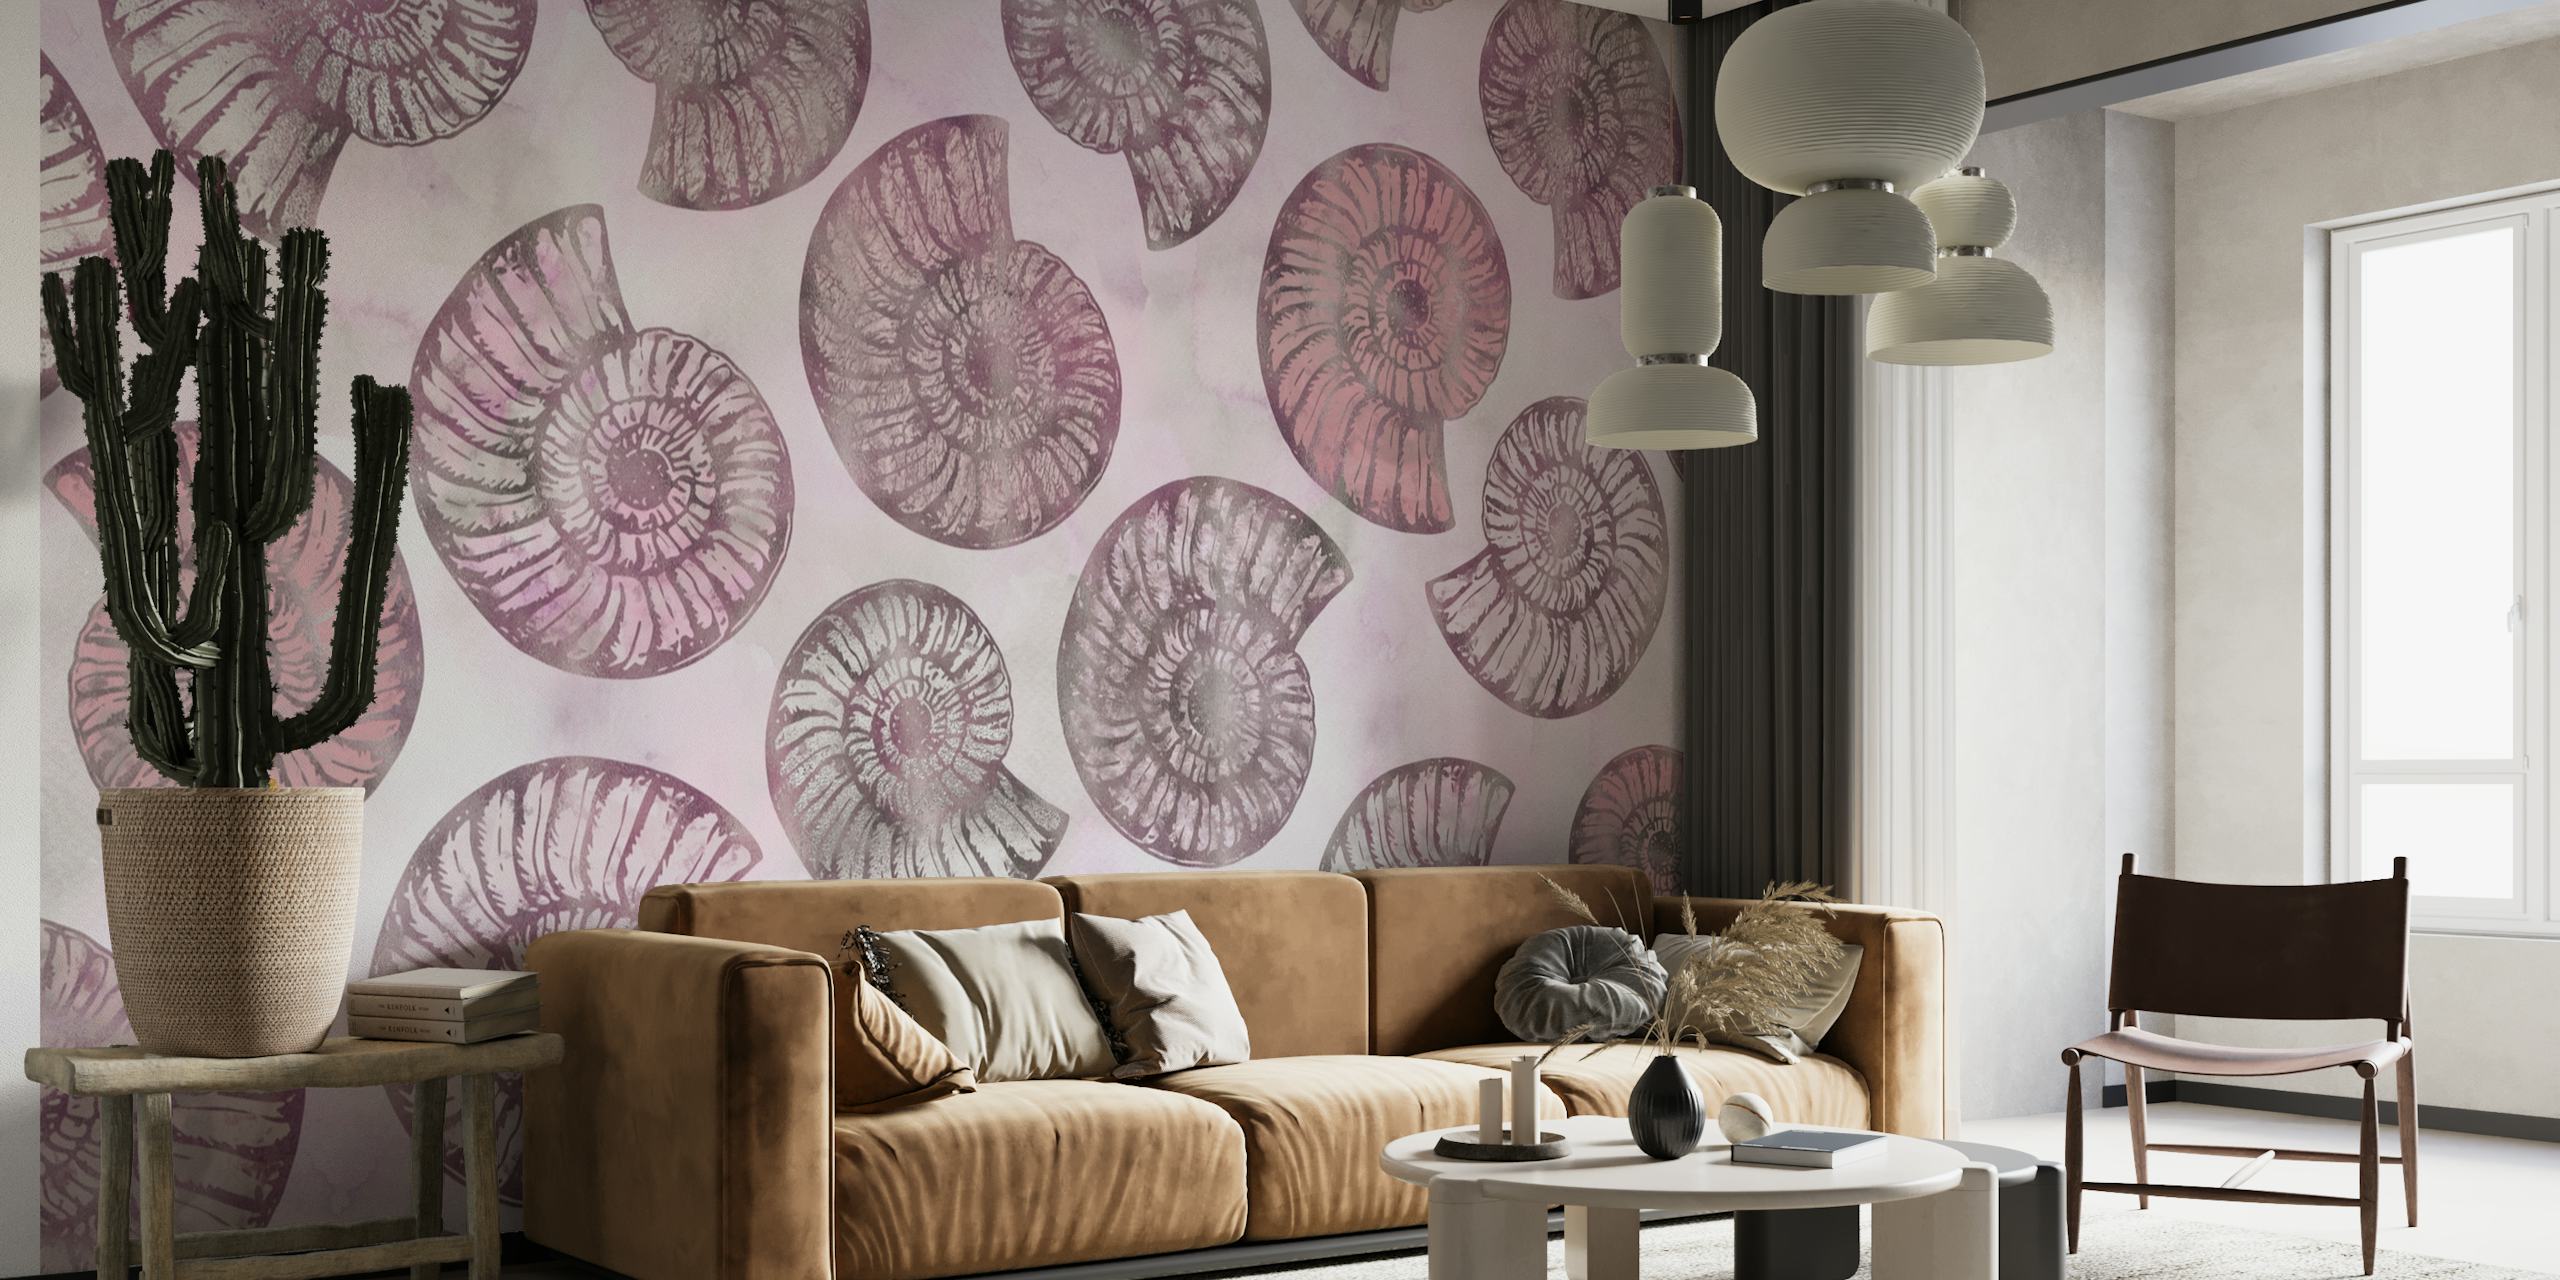 Motif de coquillages rose pâle sur une décoration murale